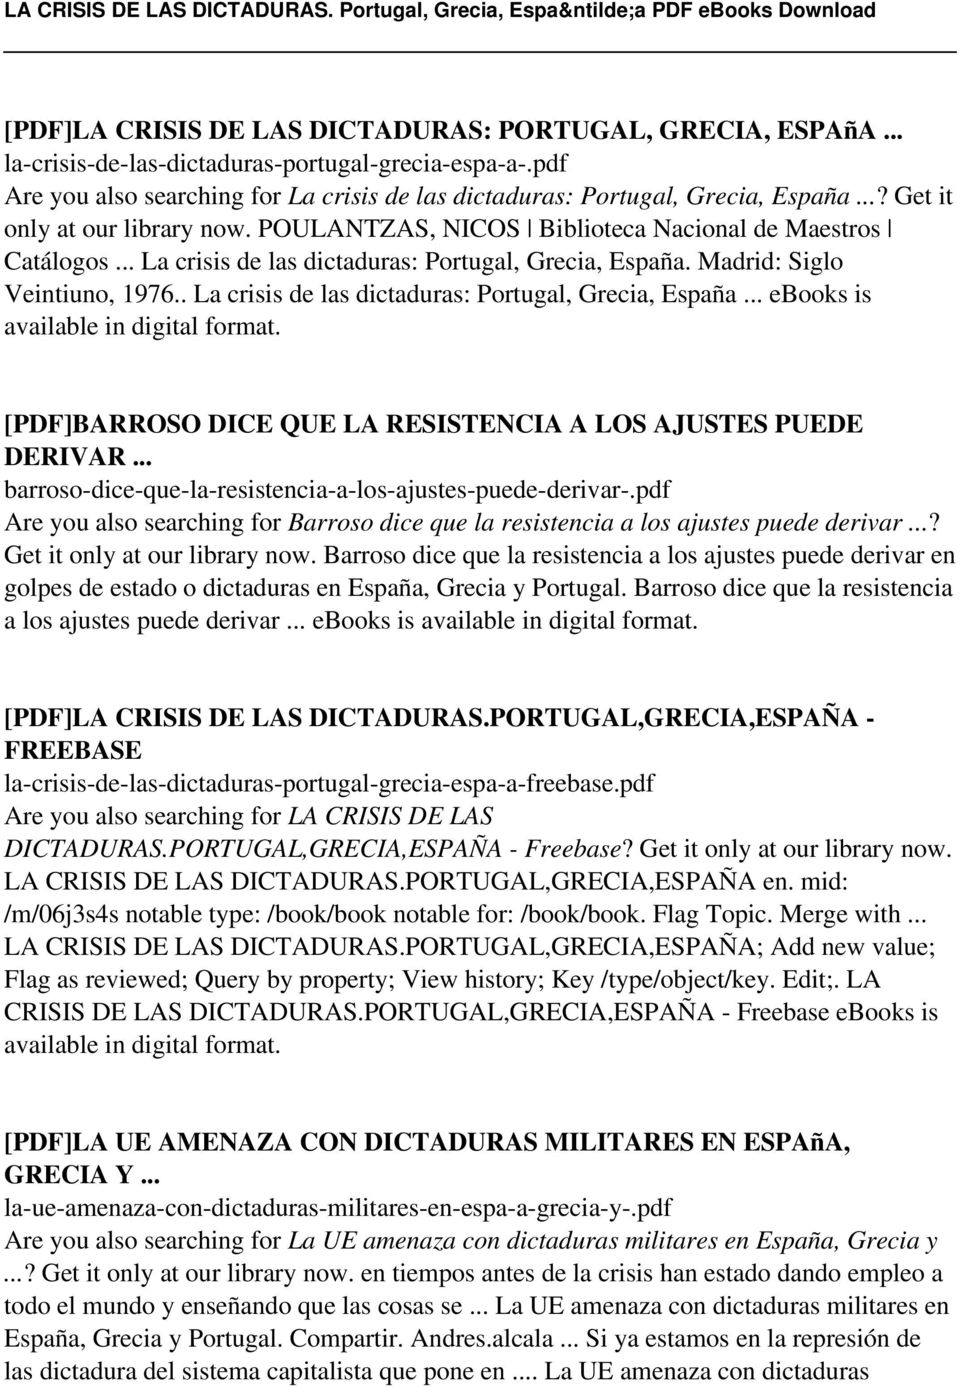 . La crisis de las dictaduras: Portugal, Grecia, España... ebooks is [PDF]BARROSO DICE QUE LA RESISTENCIA A LOS AJUSTES PUEDE DERIVAR... barroso-dice-que-la-resistencia-a-los-ajustes-puede-derivar-.